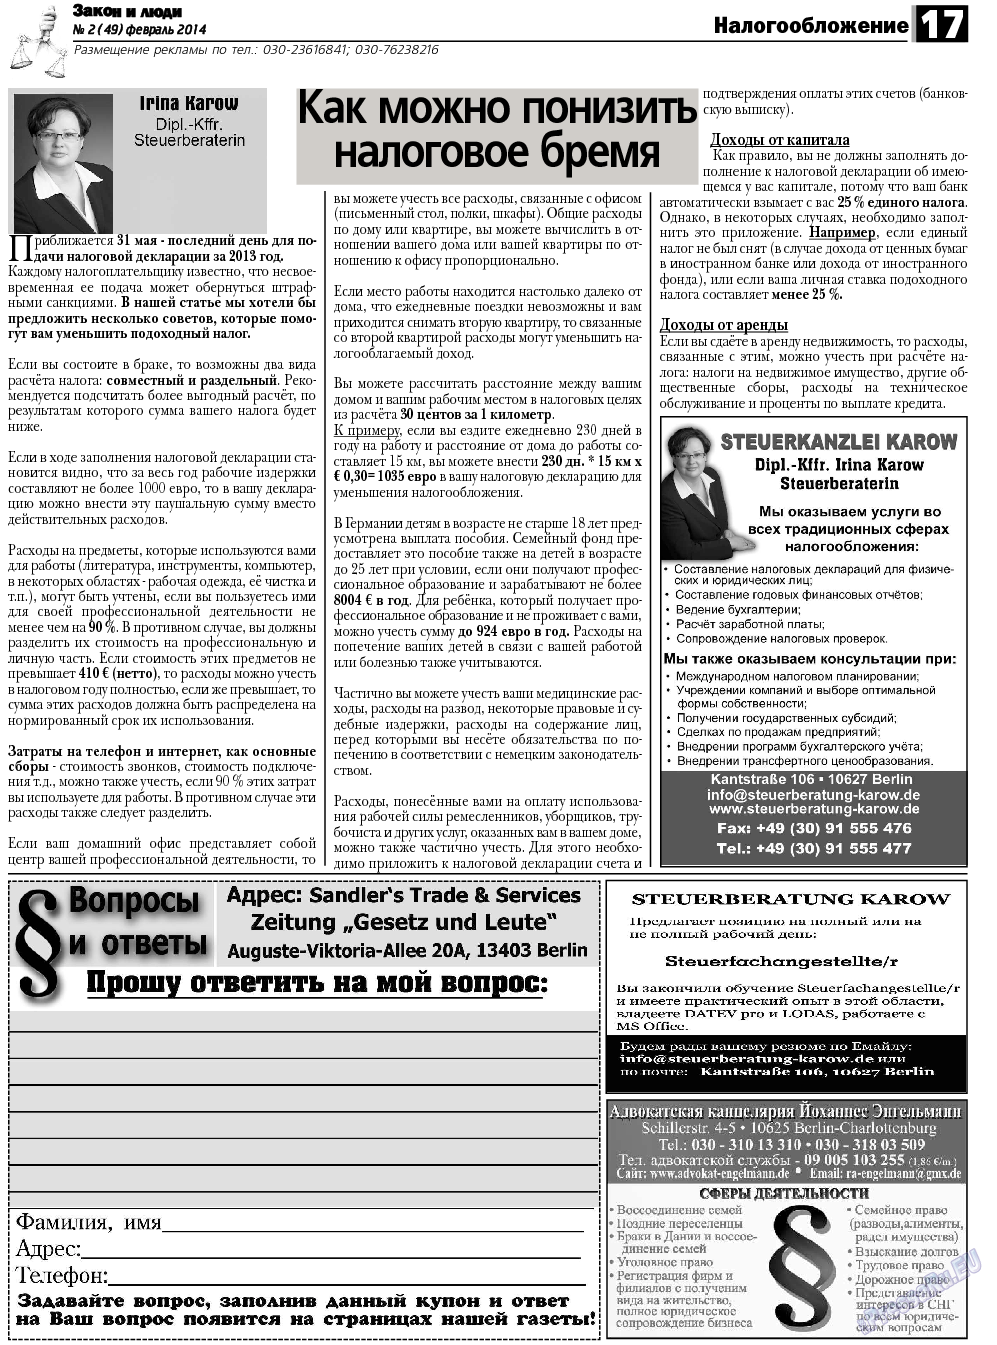 Закон и люди, газета. 2014 №2 стр.17